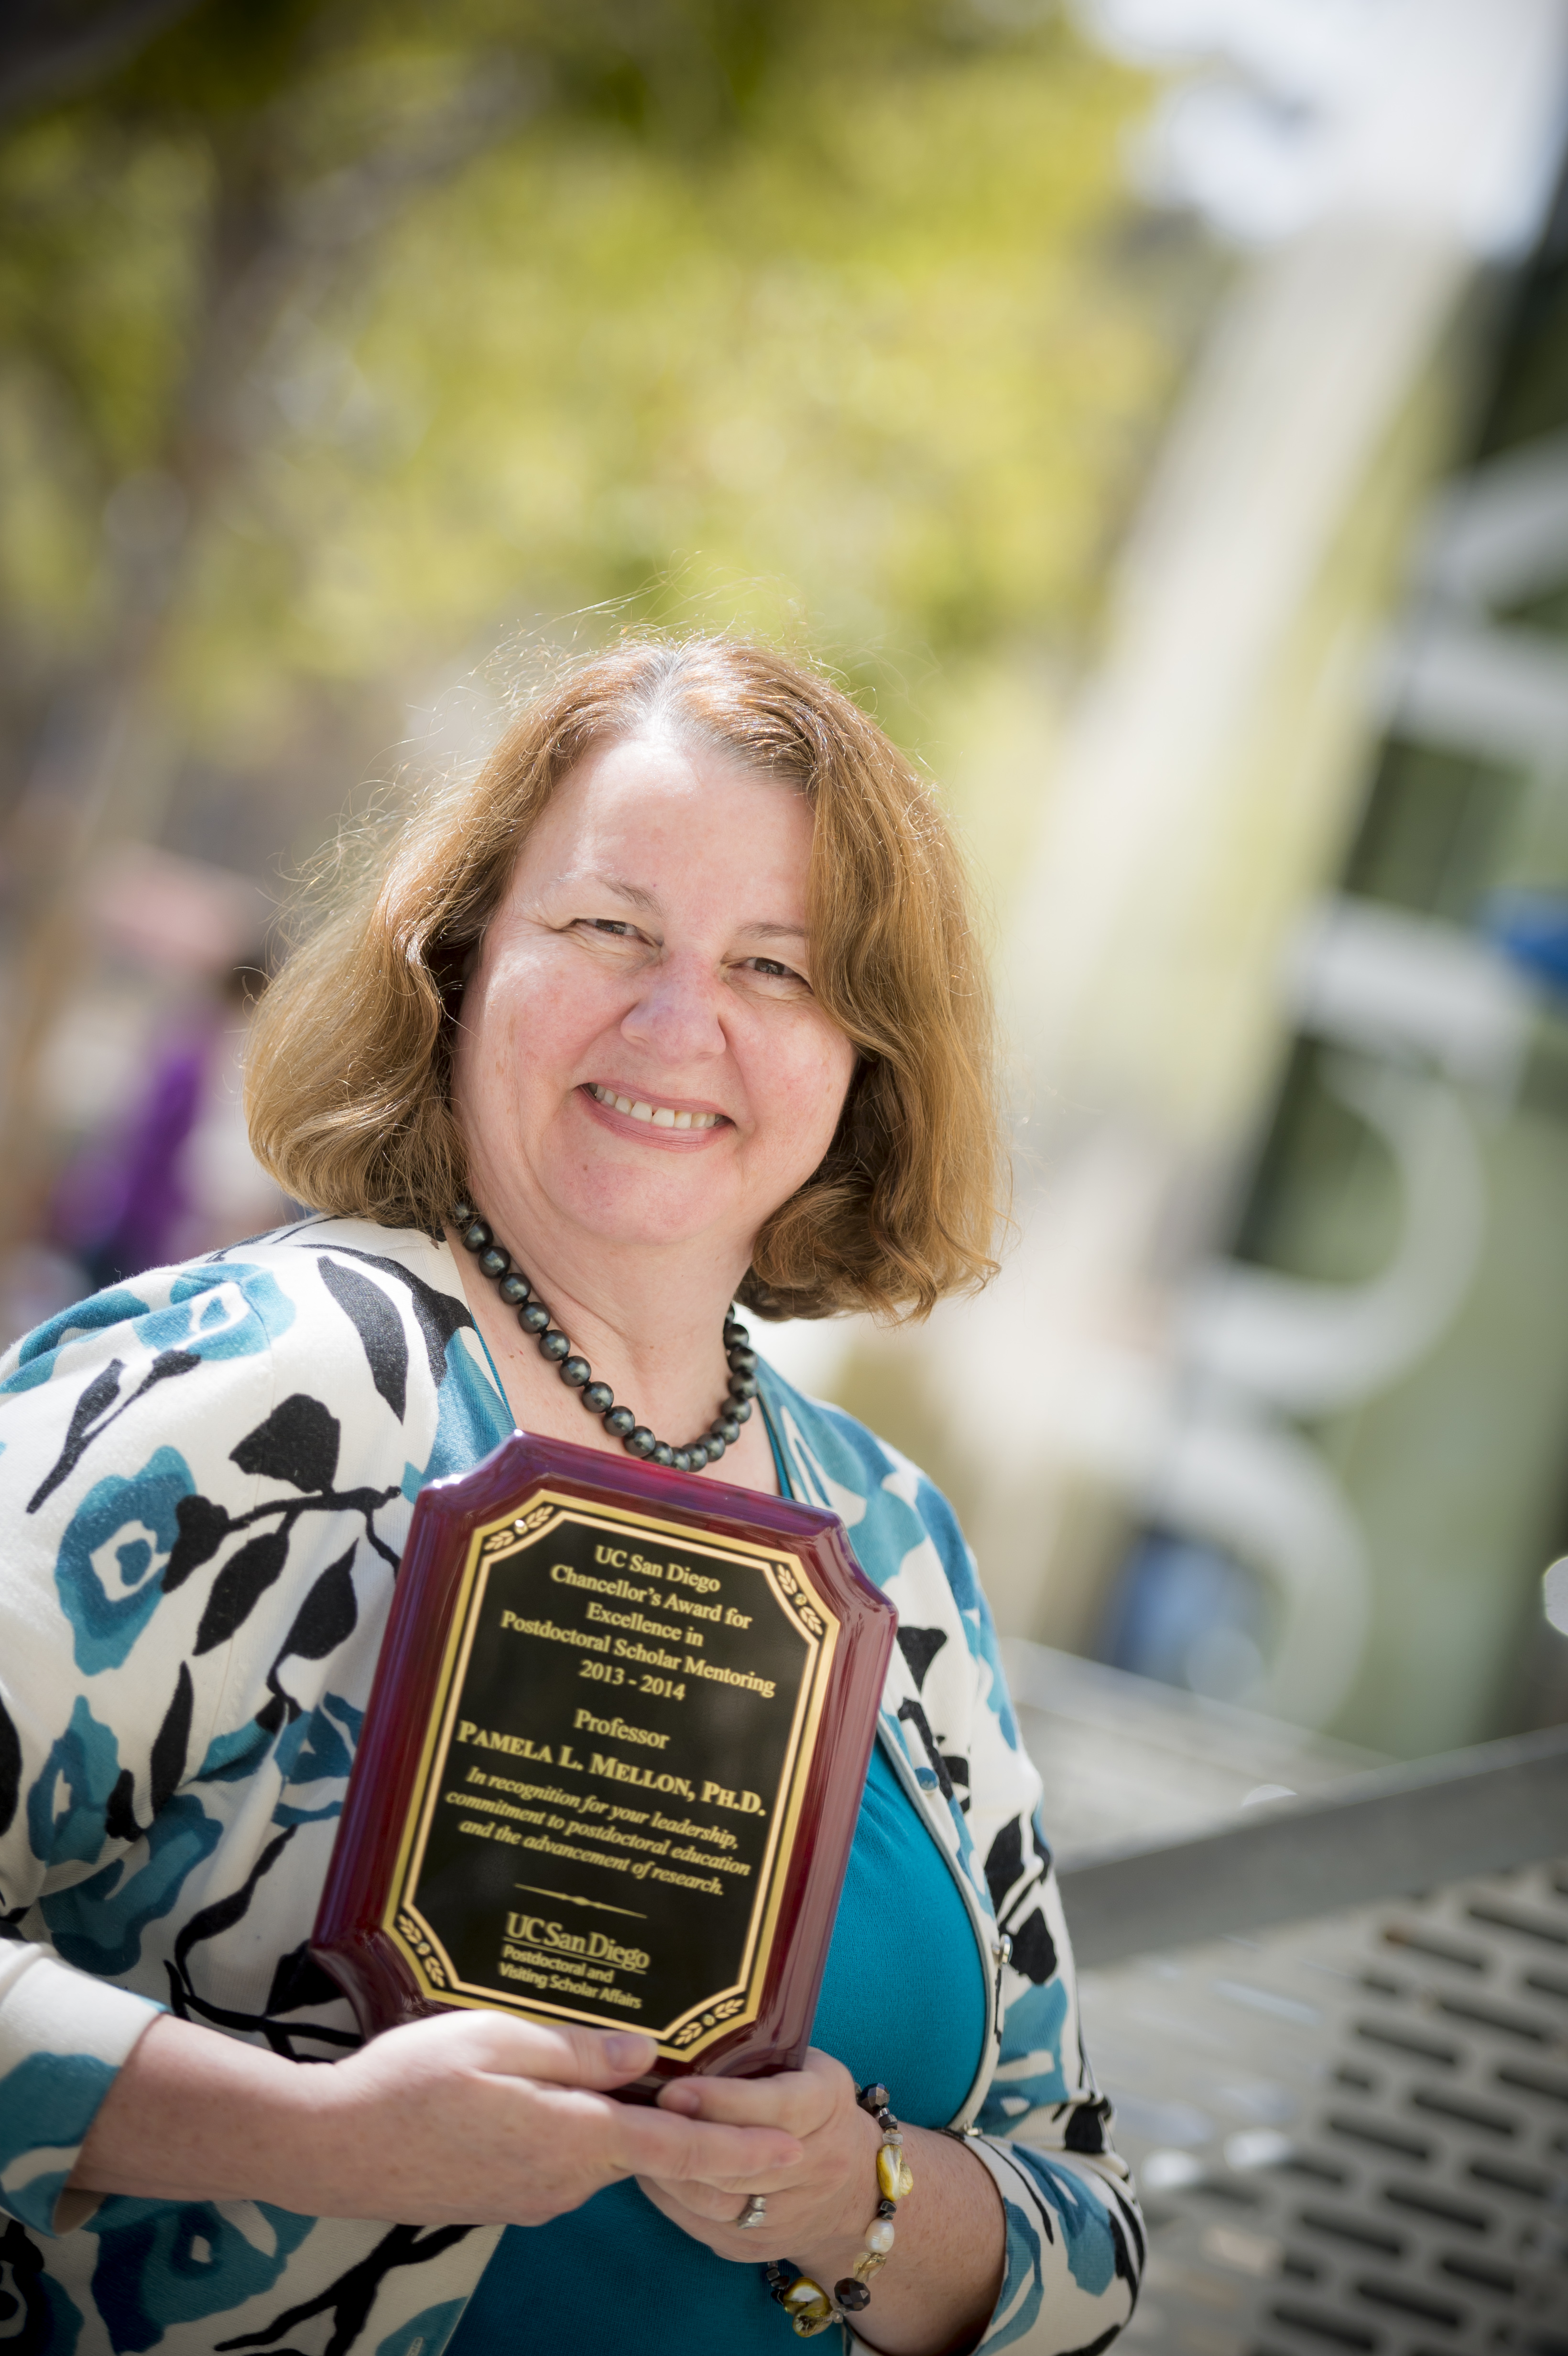 Mellon 2013 Chancellors Award Mentor